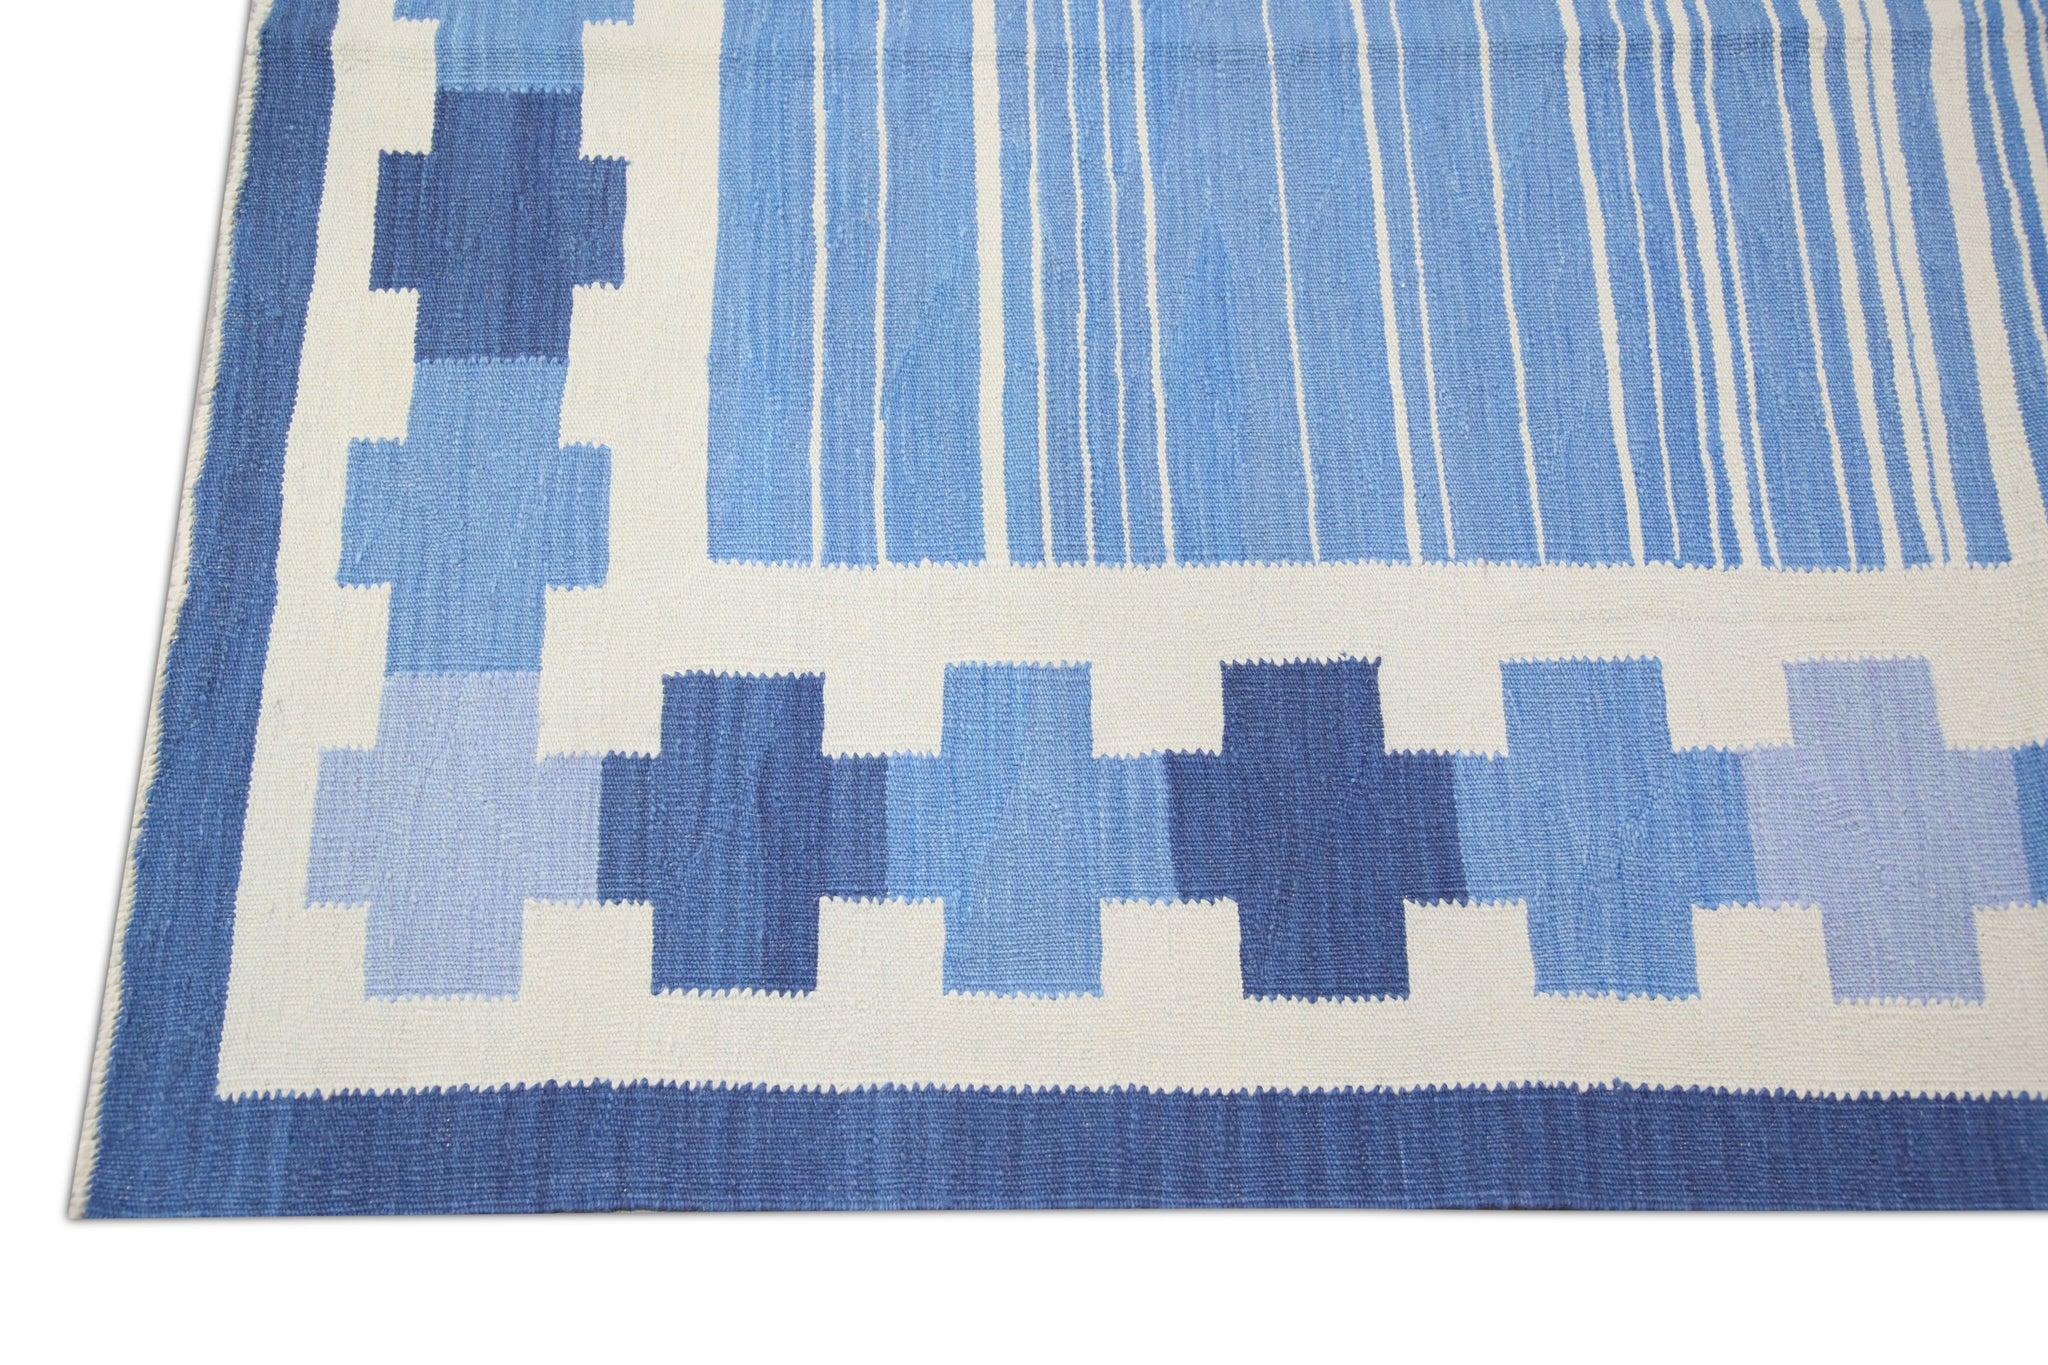 Vegetable Dyed Modern Flatweave Handmade Wool Rug in Blue Geometric Design 10' X 14'6